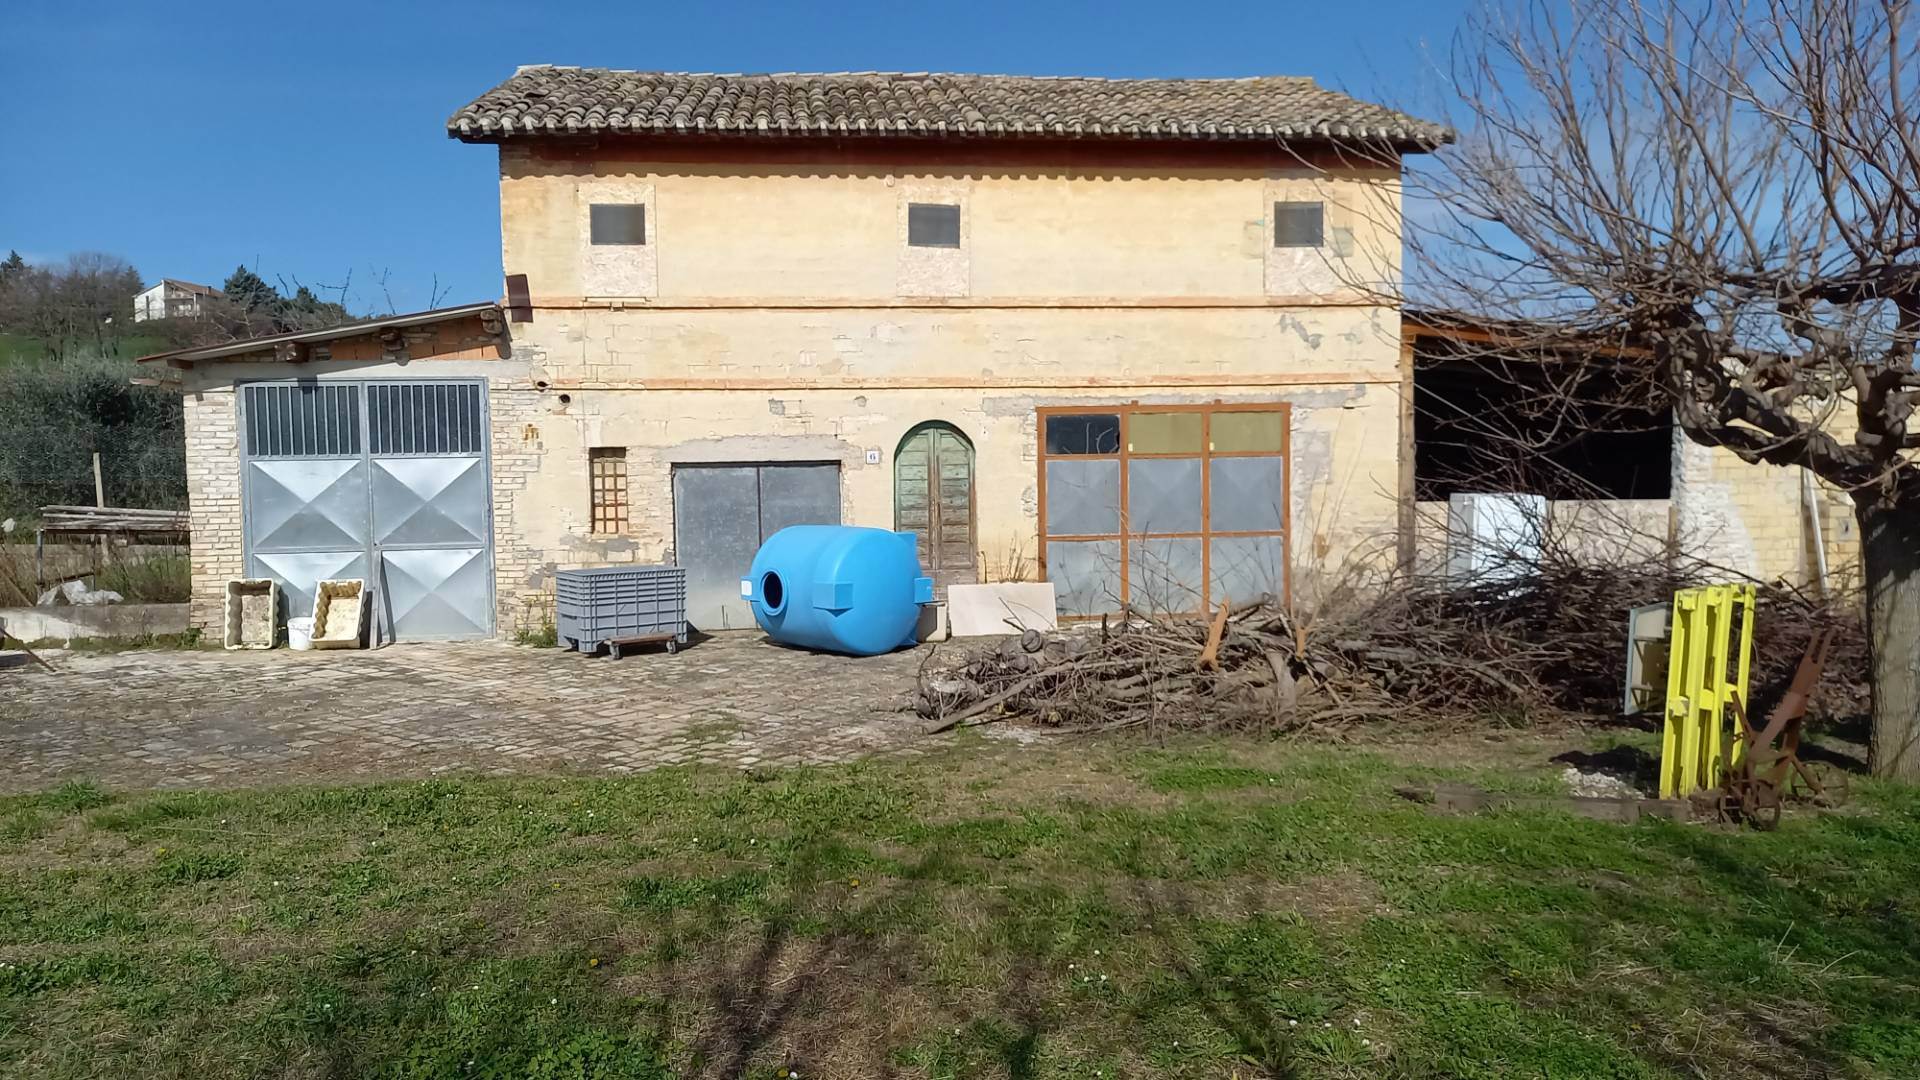 Rustico / Casale in vendita a Cingoli, 3 locali, zona Località: PIAN DELLA PIEVE, prezzo € 44.000 | PortaleAgenzieImmobiliari.it